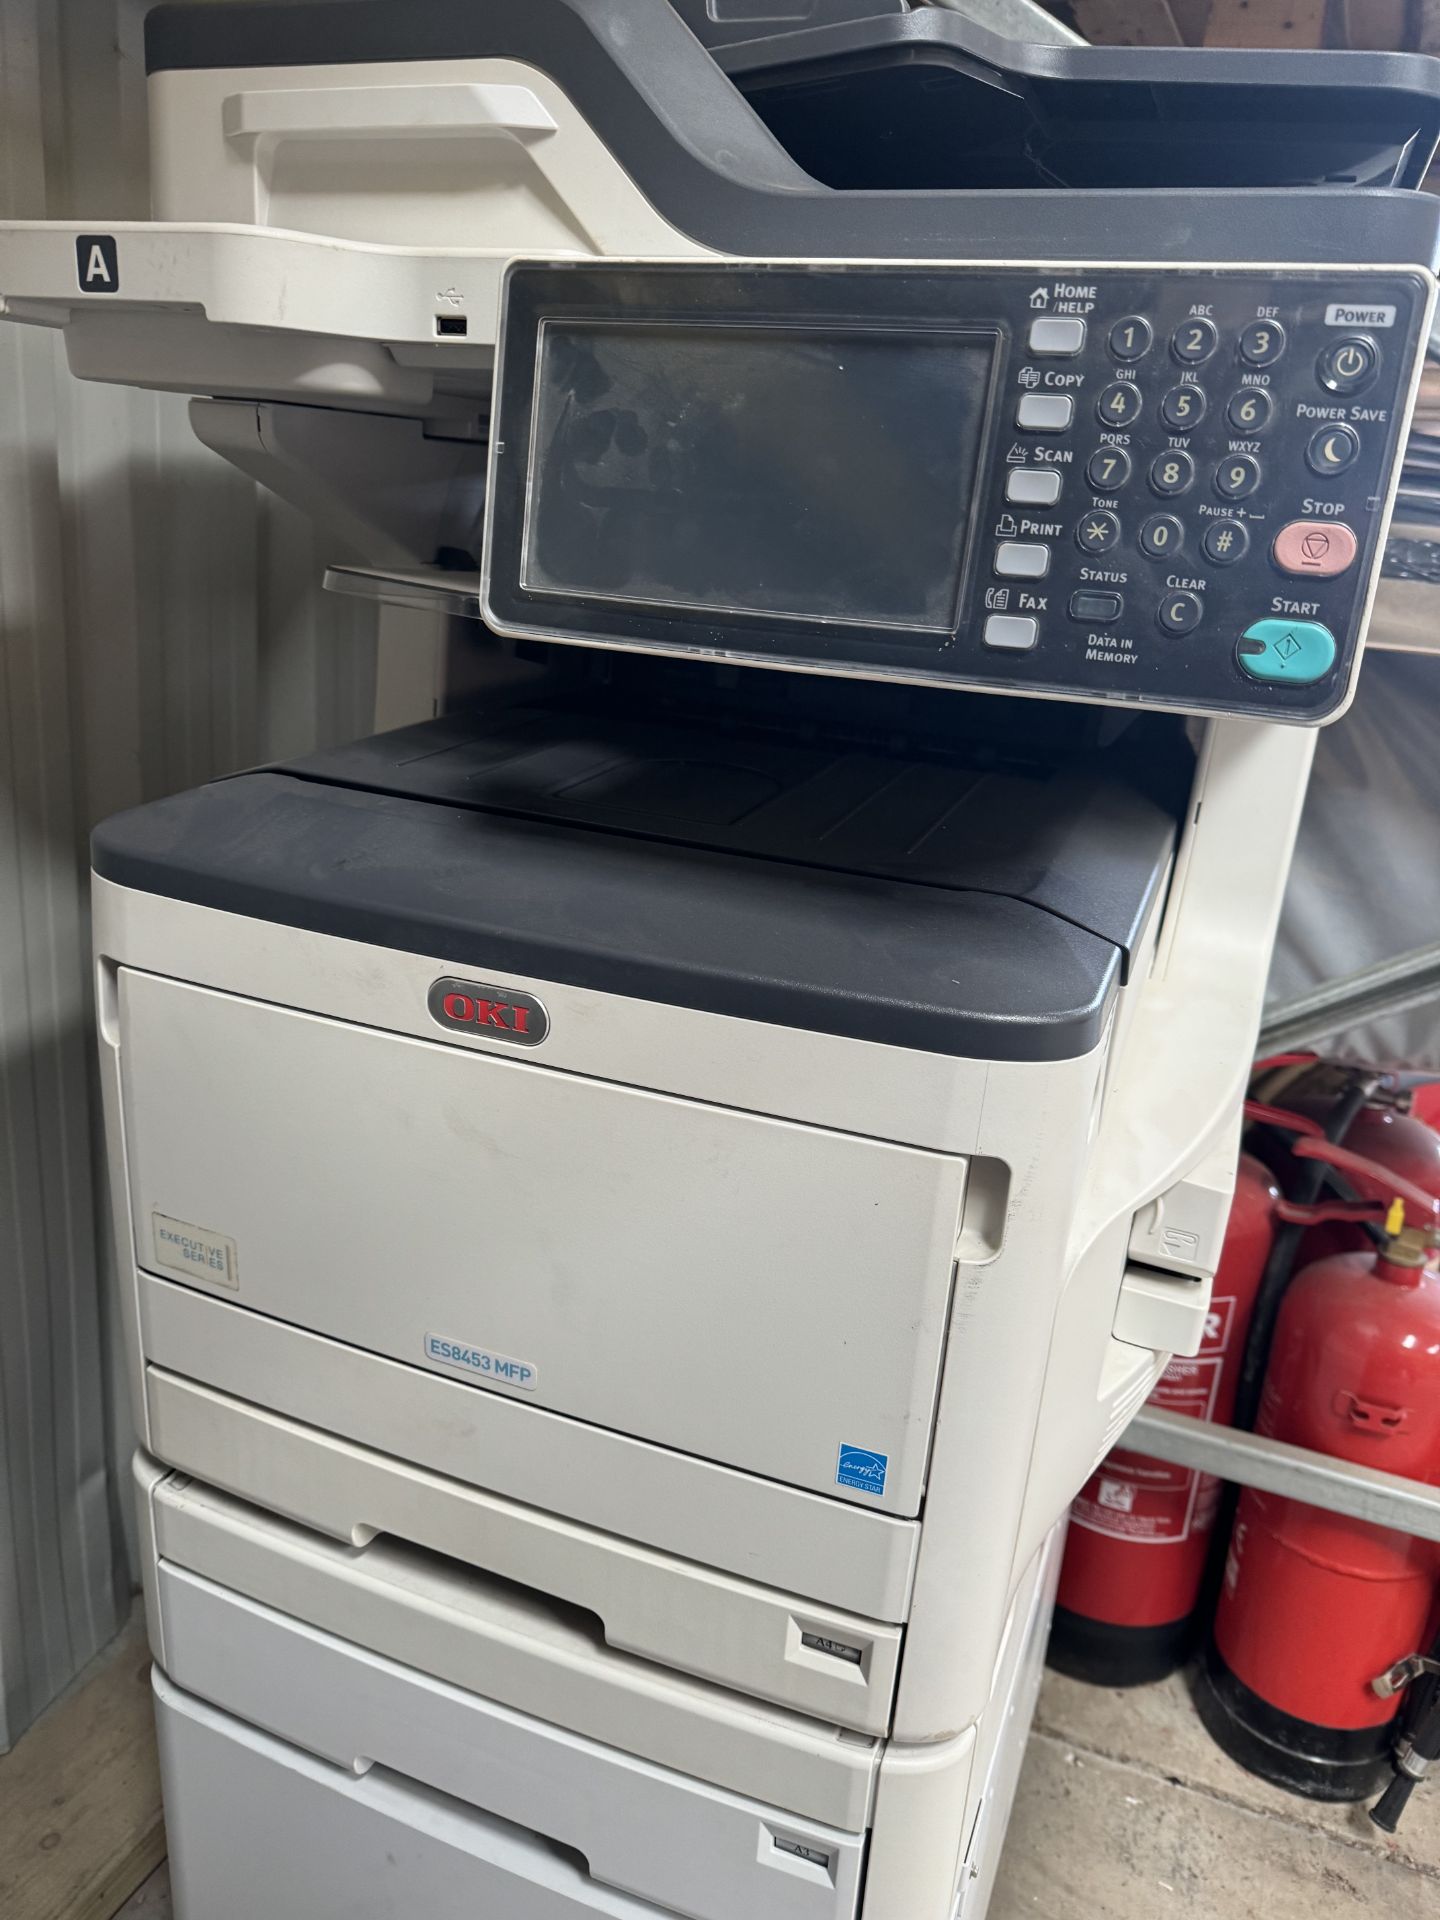 OKI photocopier ES8453MFP - Image 2 of 2